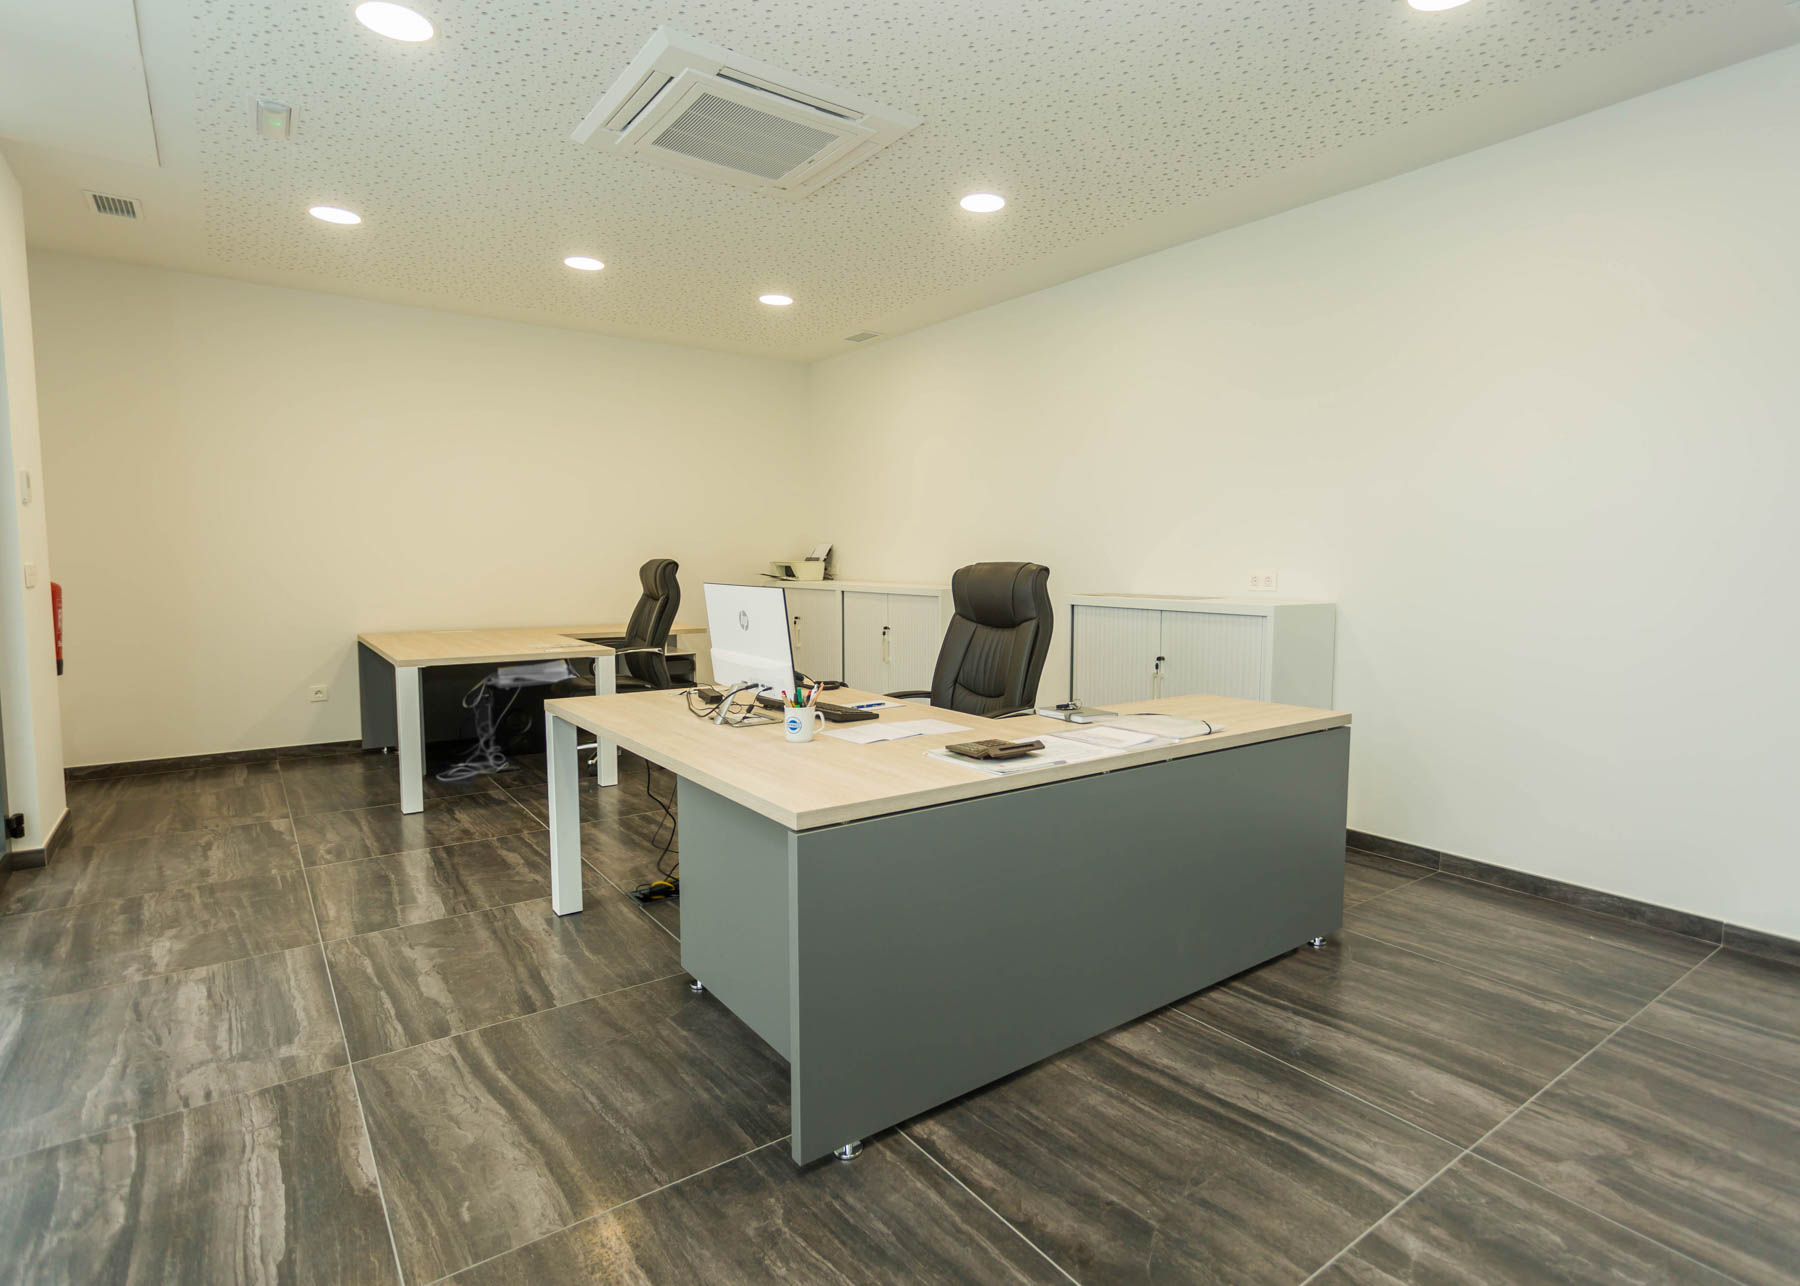 Acondicionamiento de oficina (Zarautz) - Construcciones Urbitarte